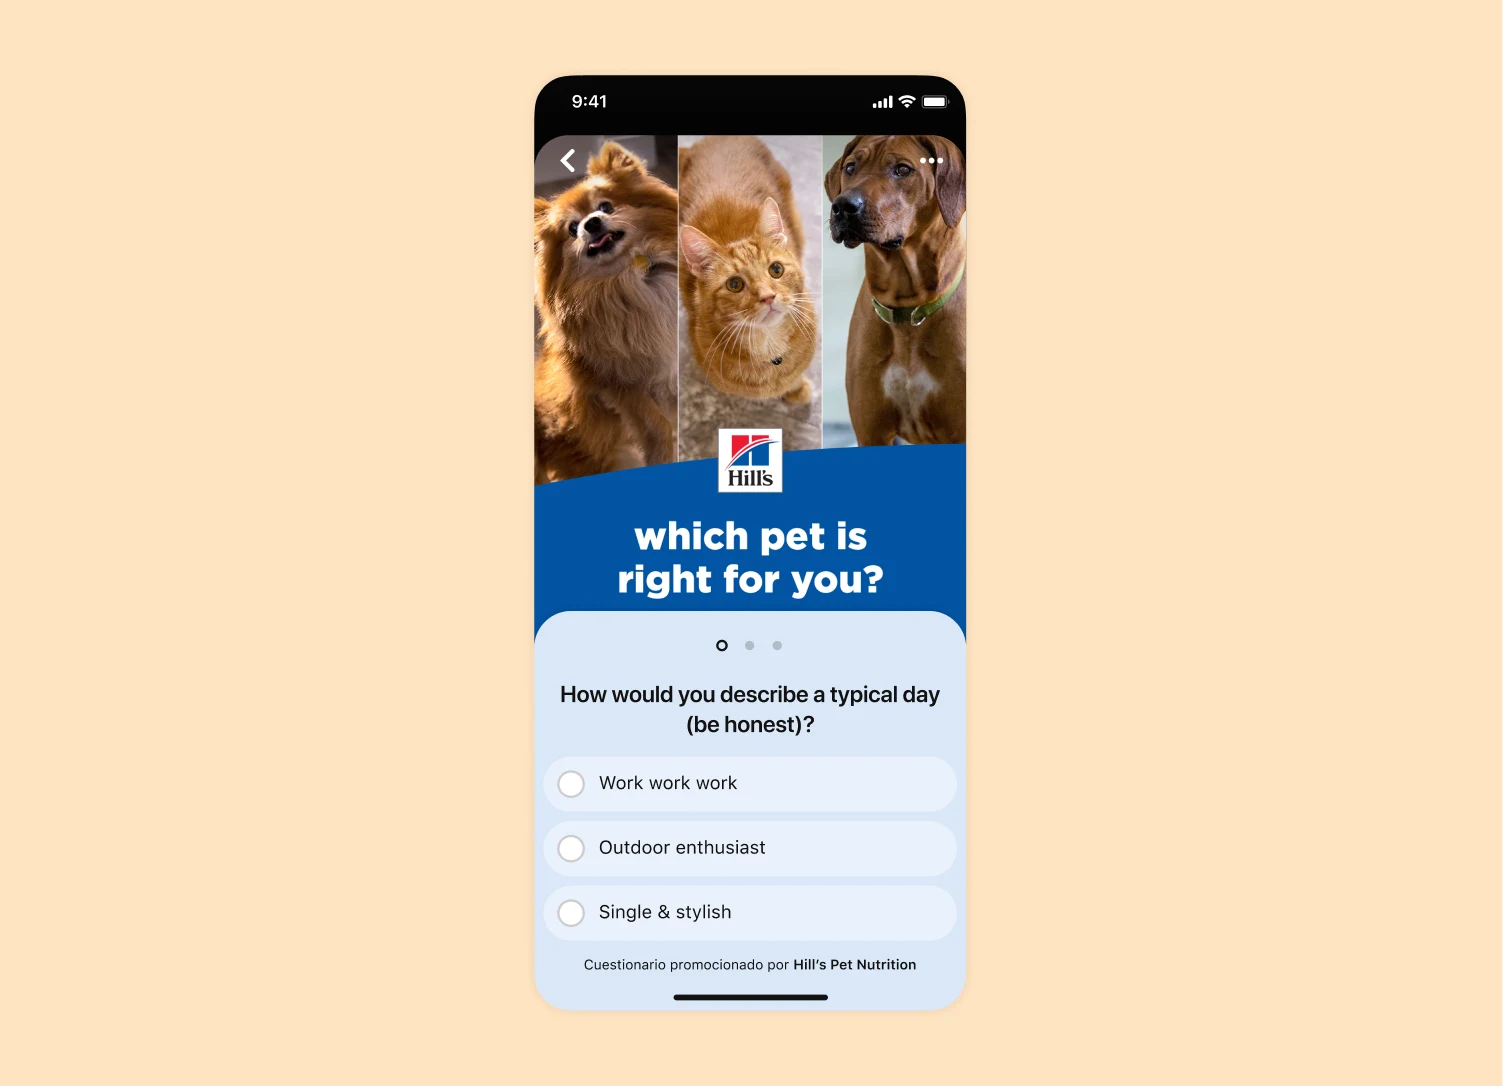 Vista de la pantalla de un dispositivo móvil con un anuncio con cuestionario de Pinterest de la marca de alimentos para mascotas Hill's Nutrition.